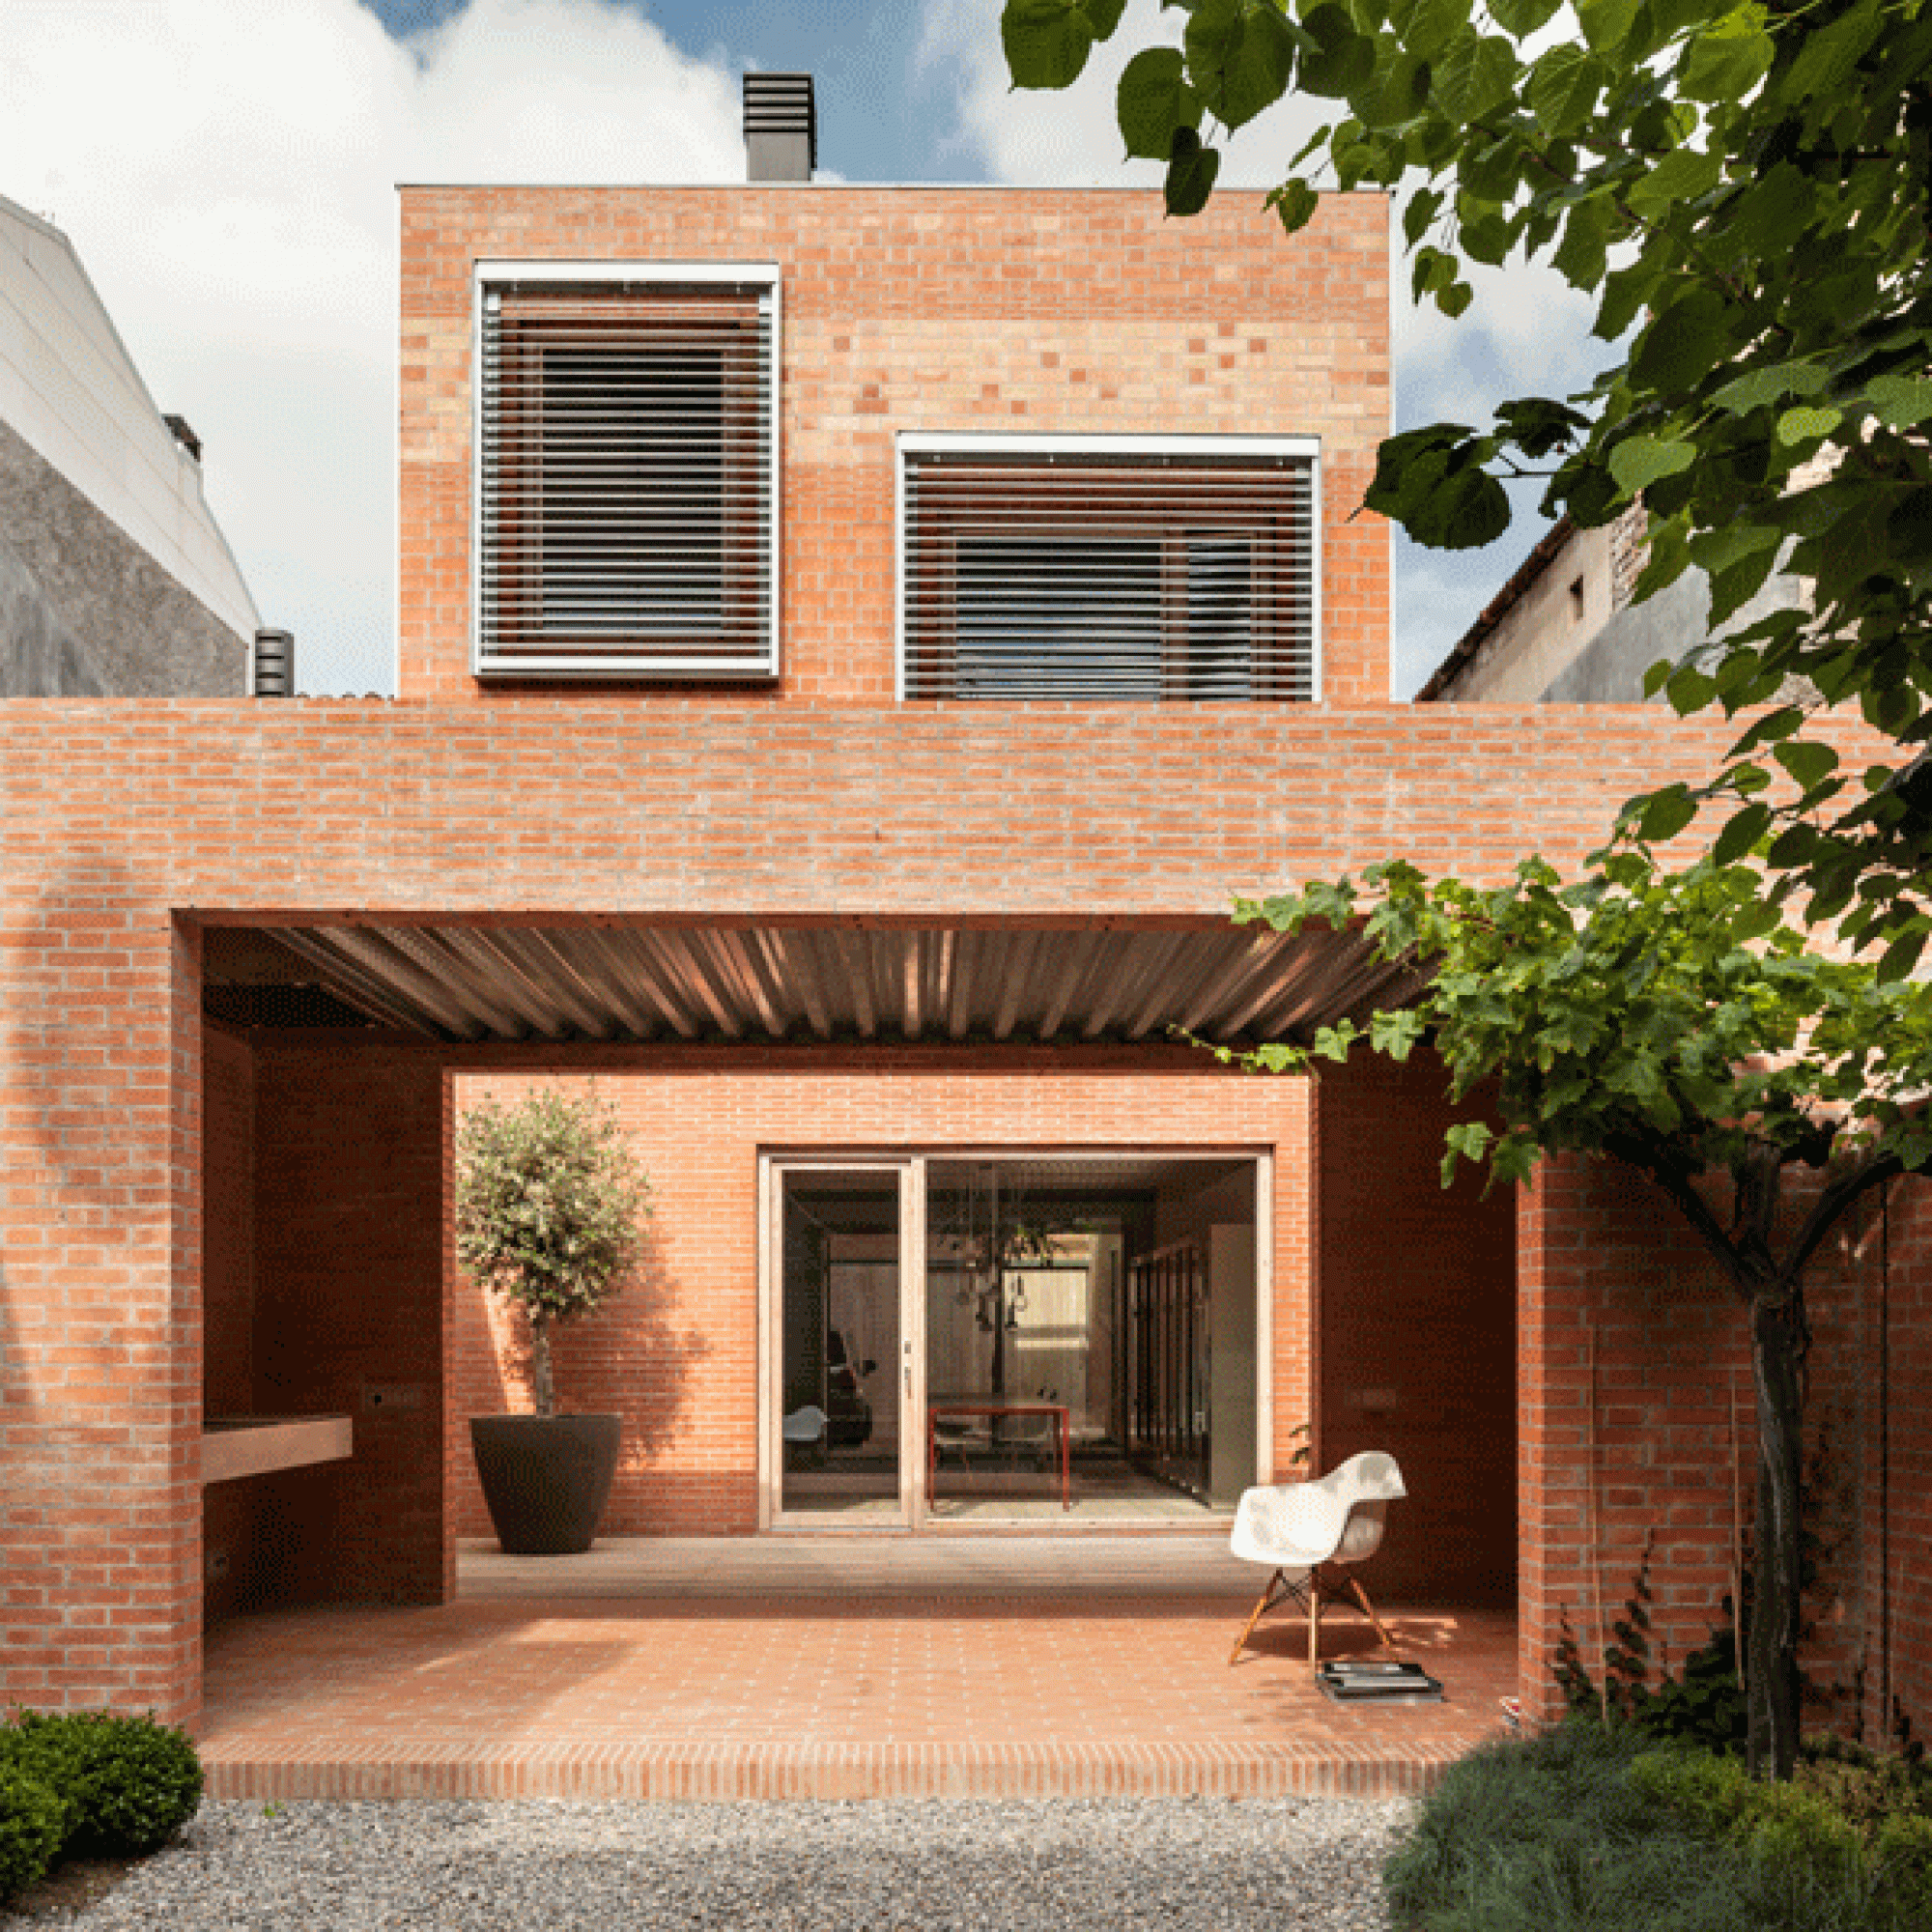 Hauptpreis und Gewinner in der Kategorie "Urban Infill": "House 1014" in Granollers, Spanien, Herquitectes (Adria Goula)